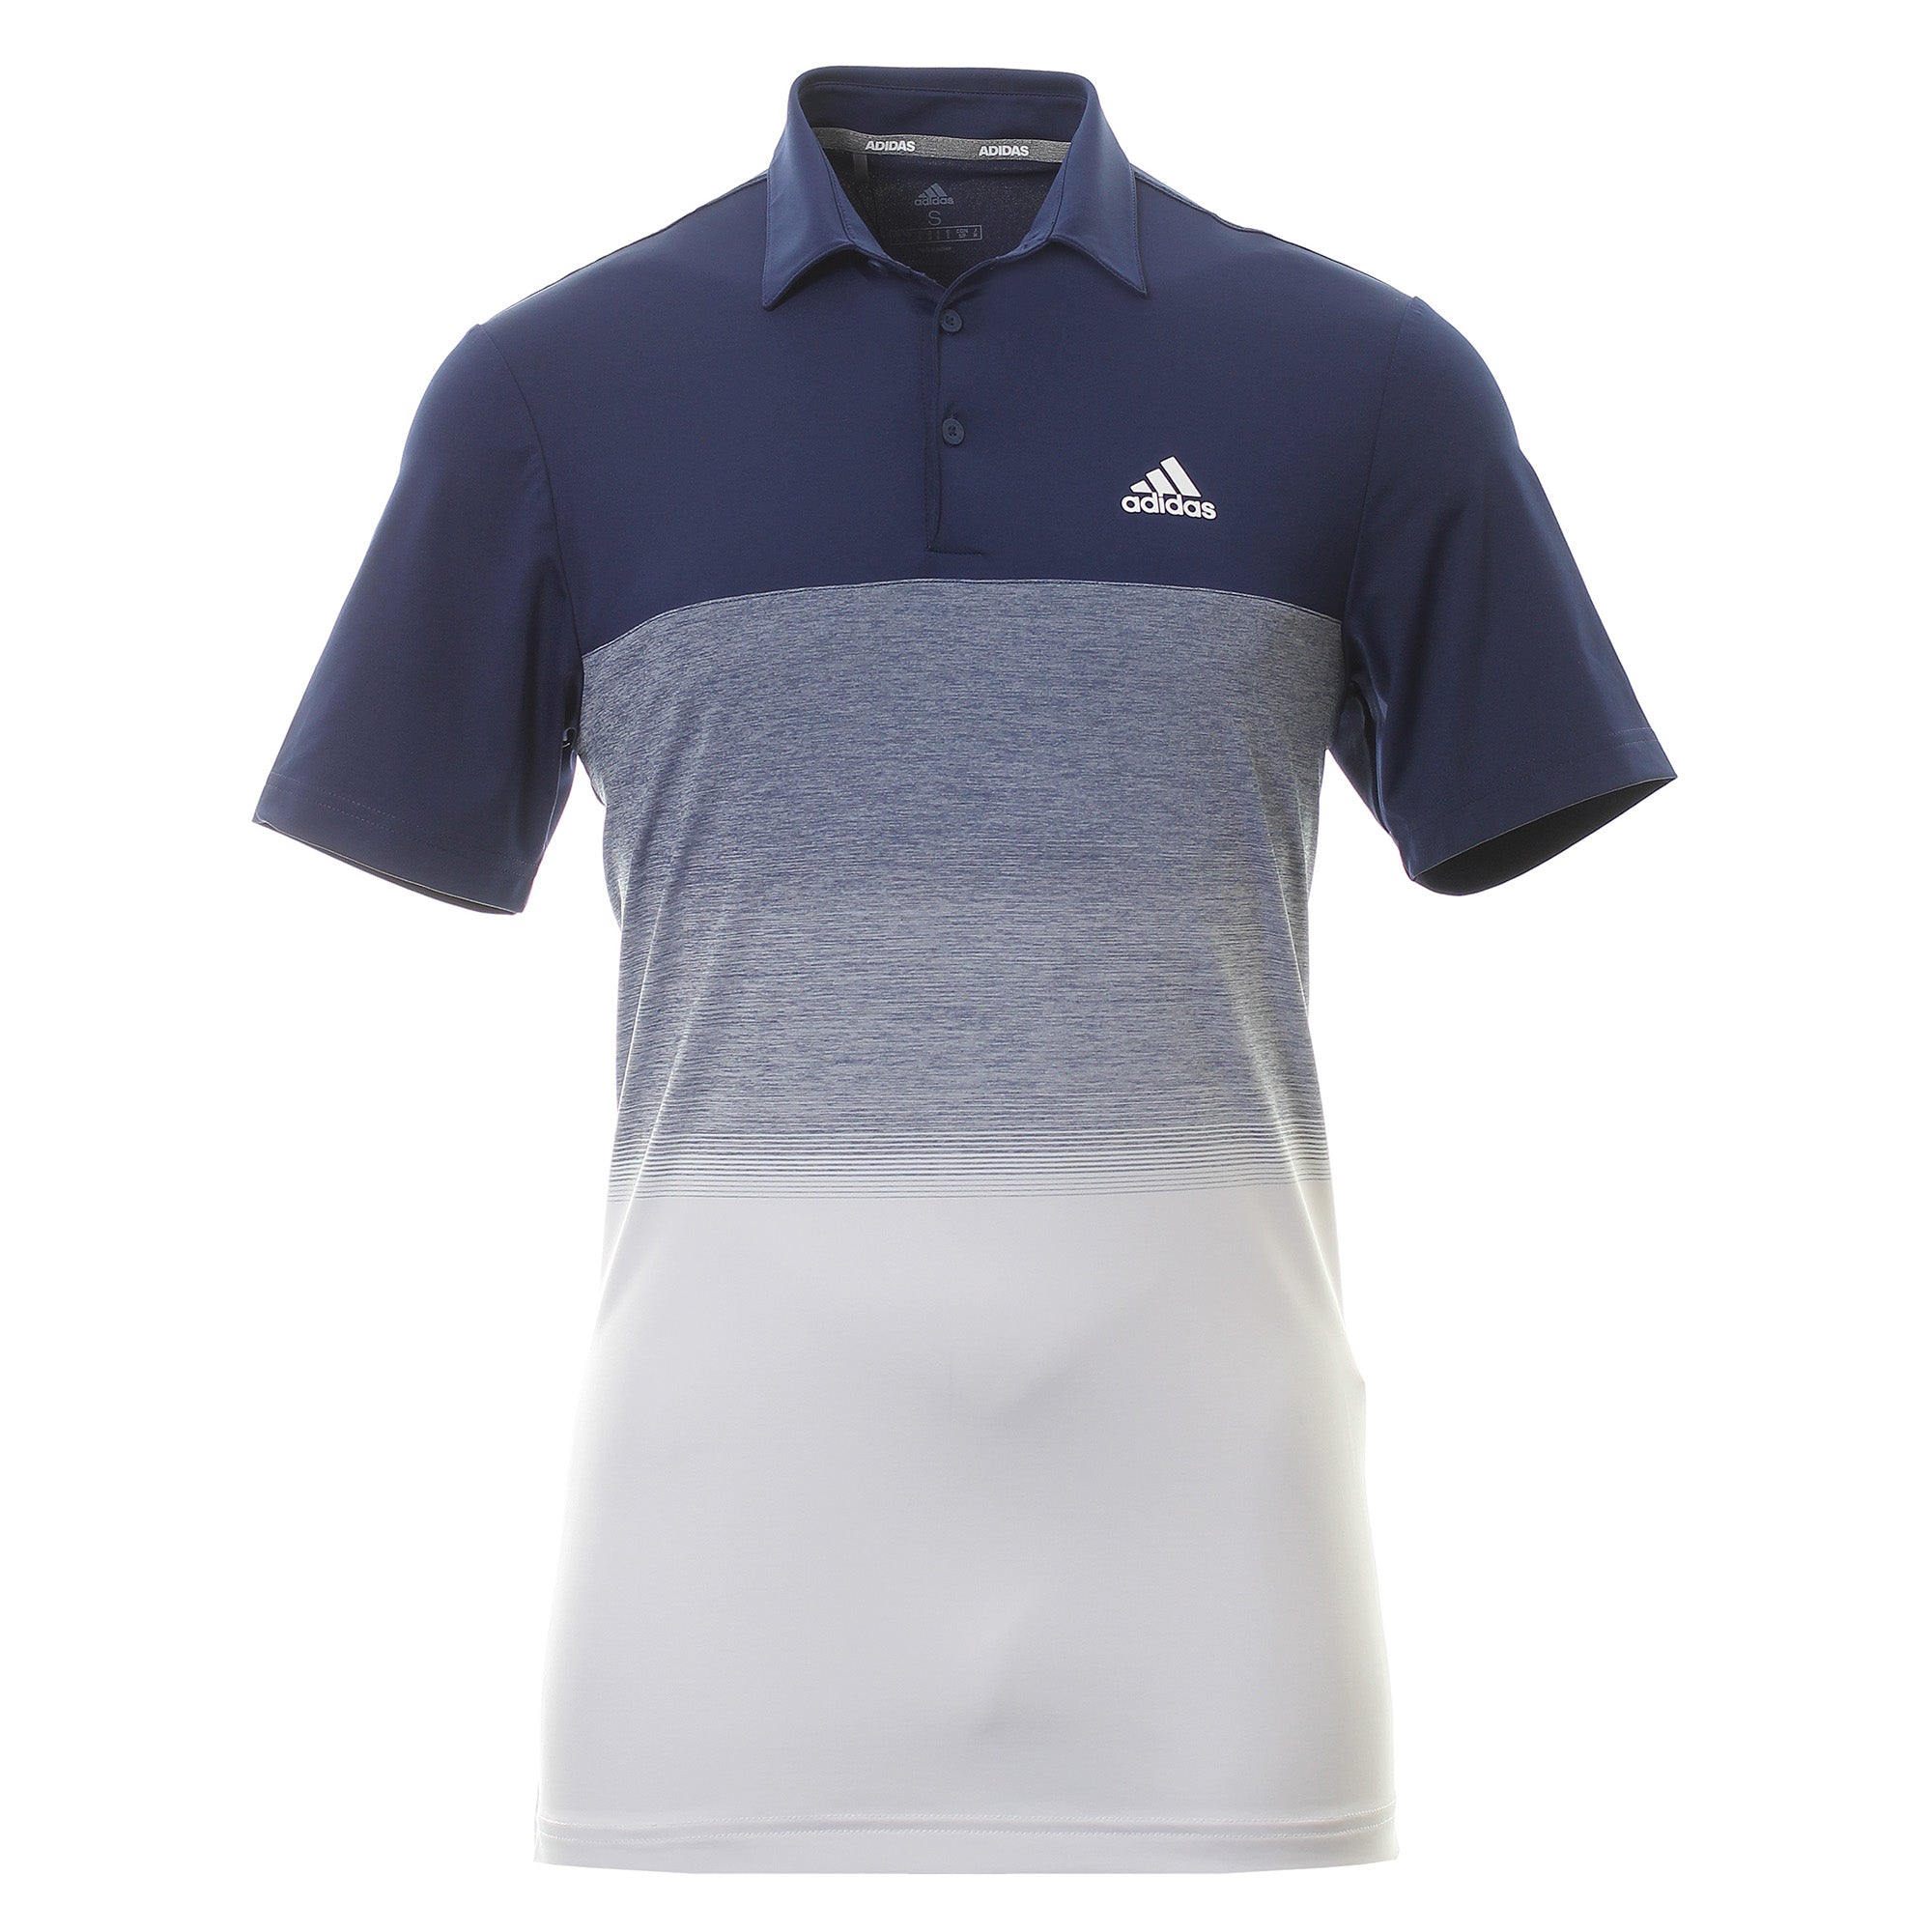 adidas ultimate 365 polo golf shirt 2018